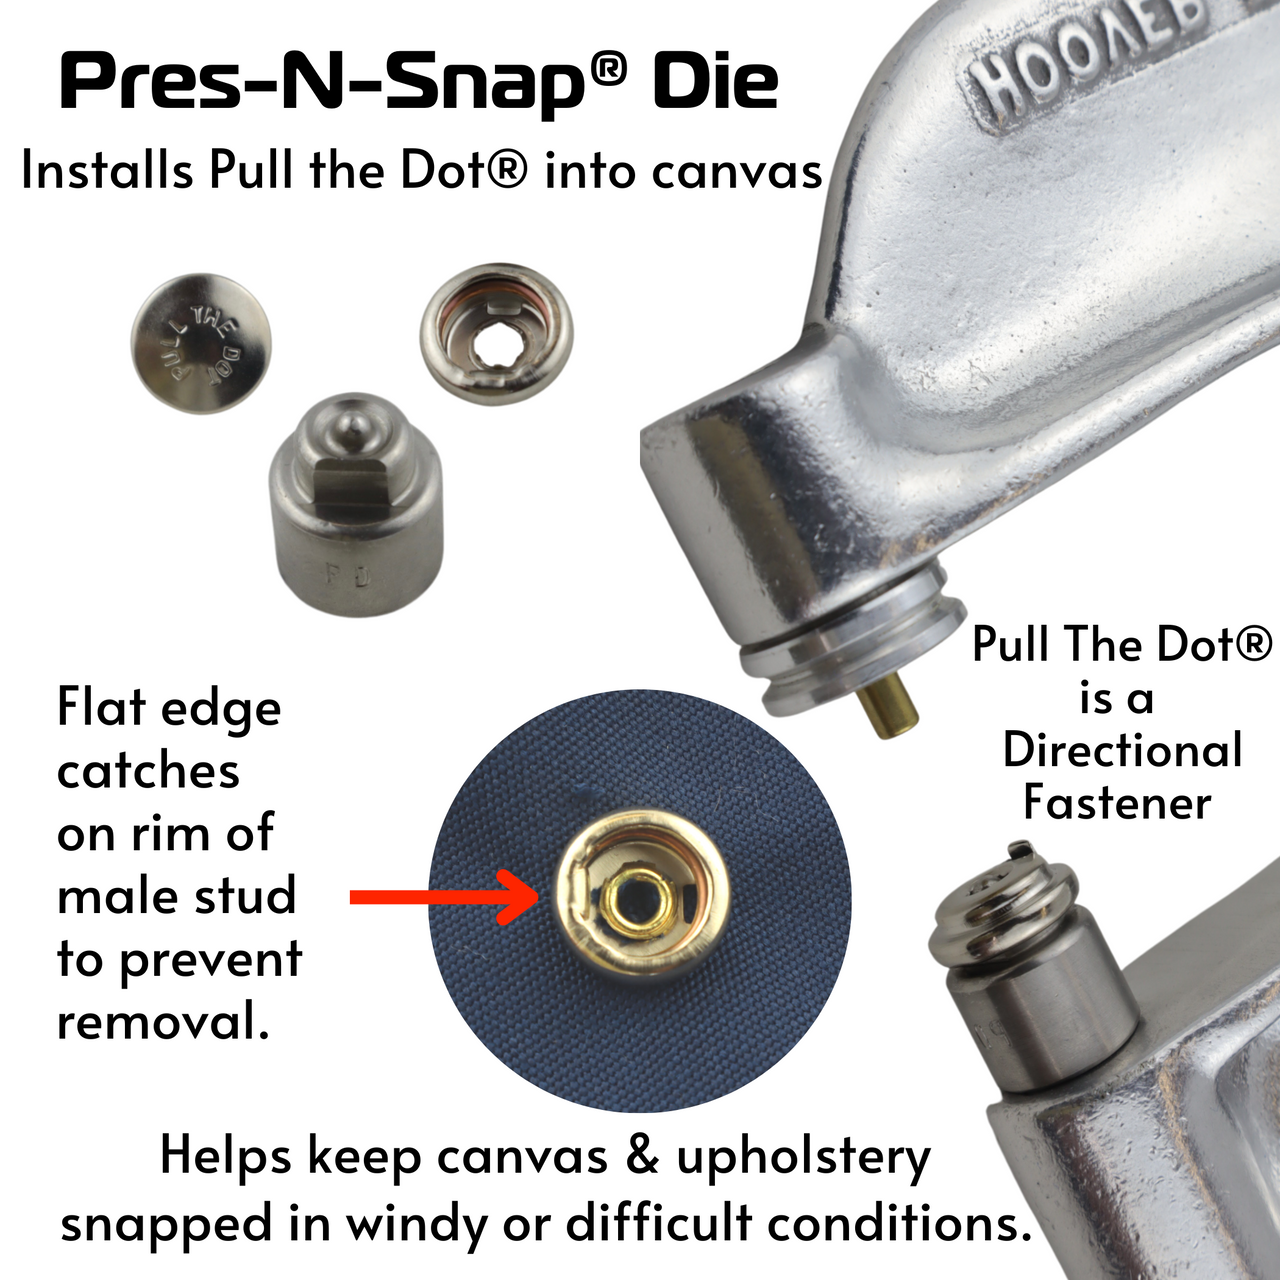 Hoover Pres-N-Snap Tool Complete Kit with Die Sets